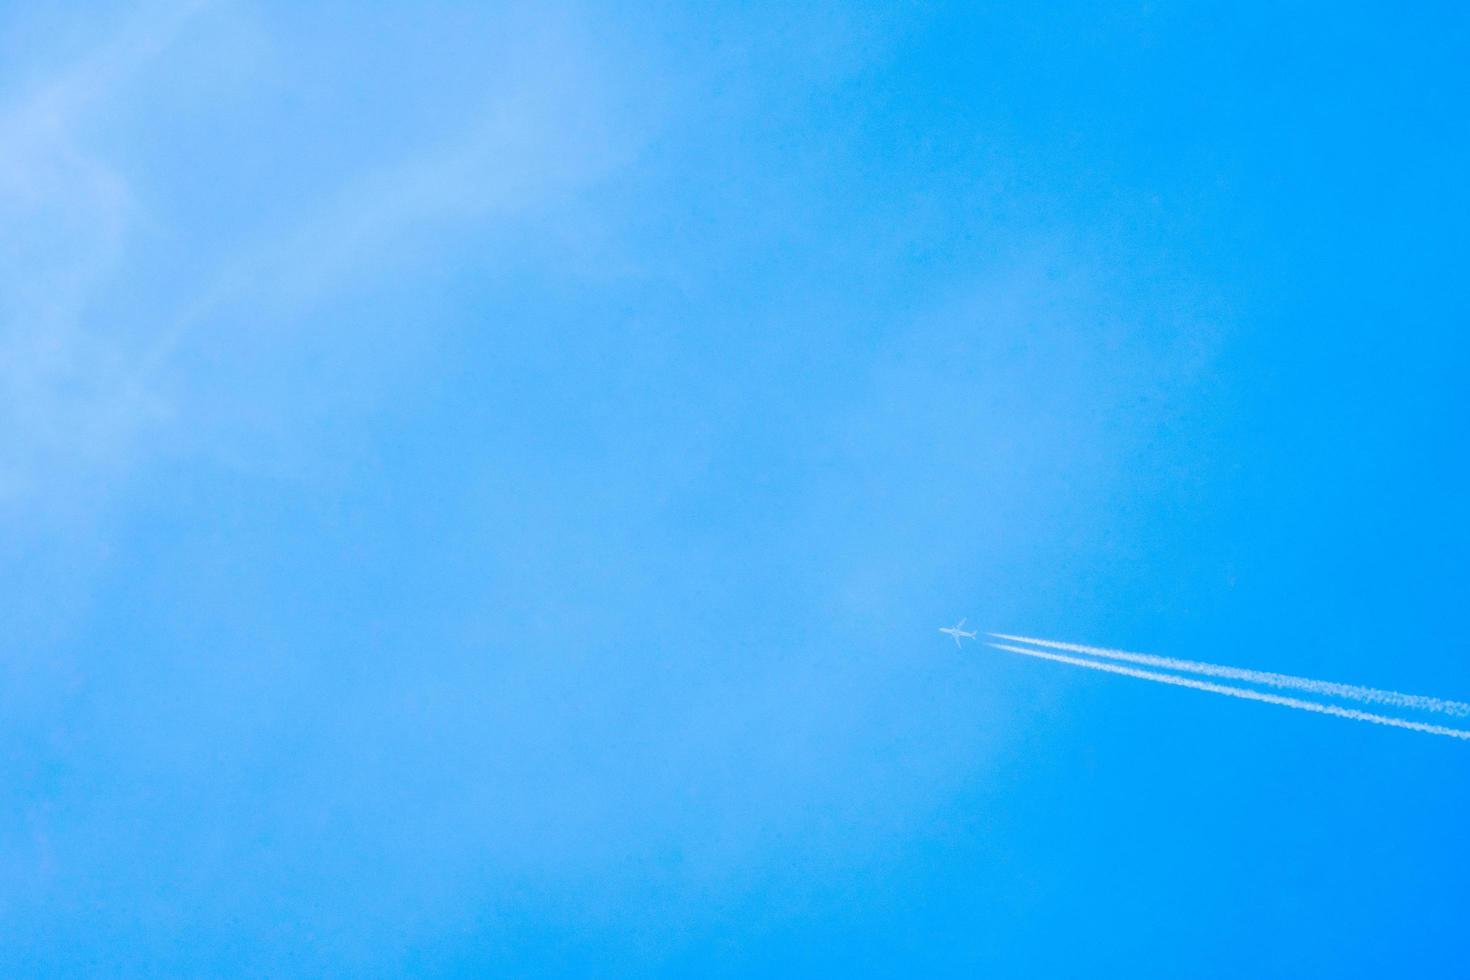 Flugzeug fliegt im klaren blauen Himmel mit weißer Spur entlang der Strecke. Jet mit Kondensstreifen in hoher Geschwindigkeit foto